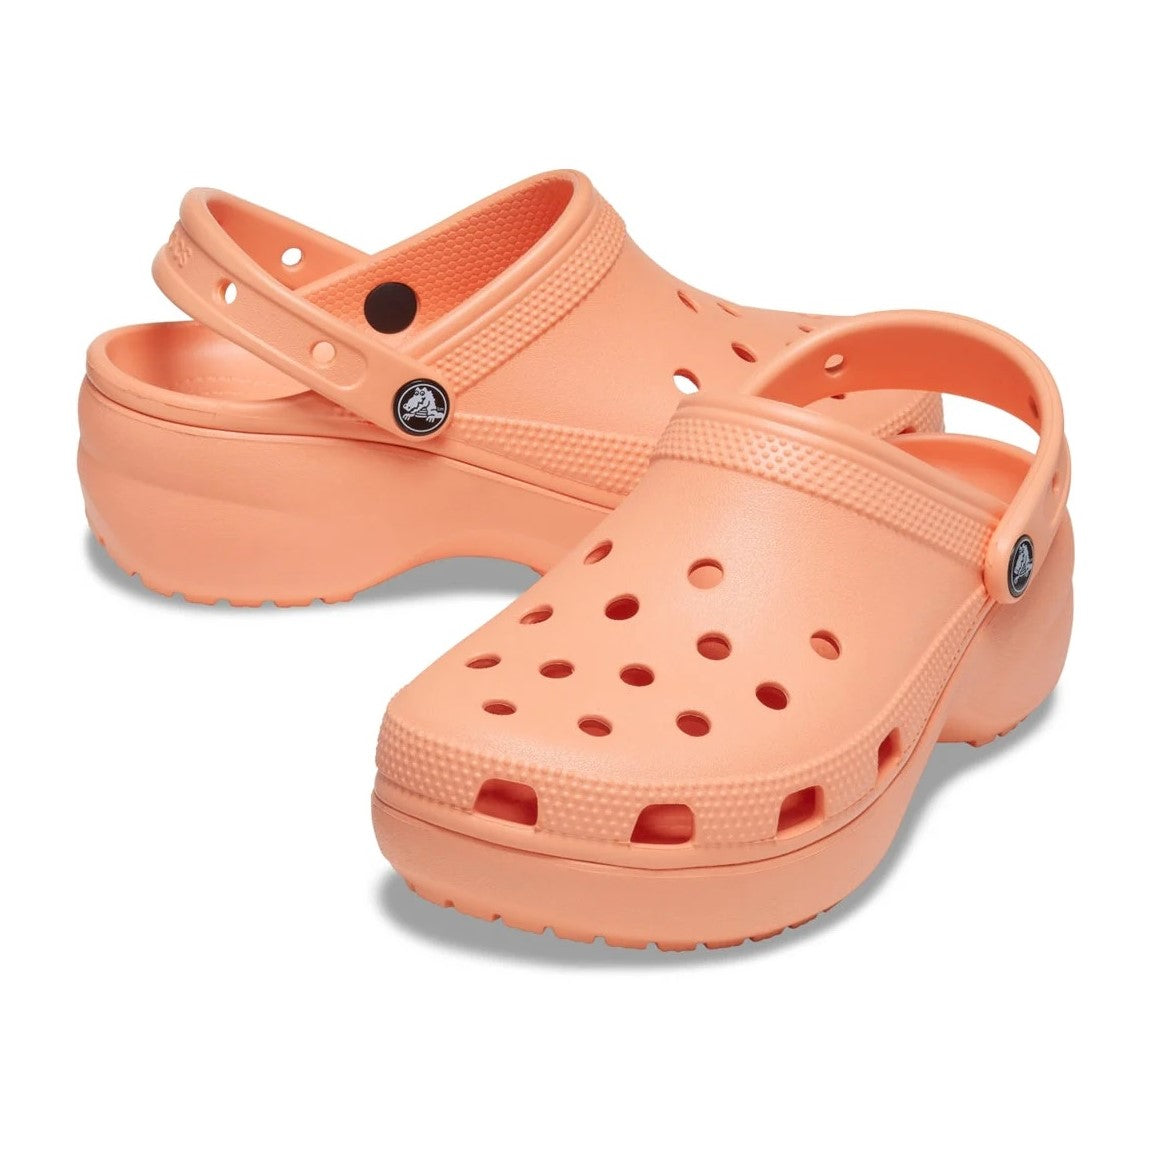 Crocs Womens Platform Clog Sandals